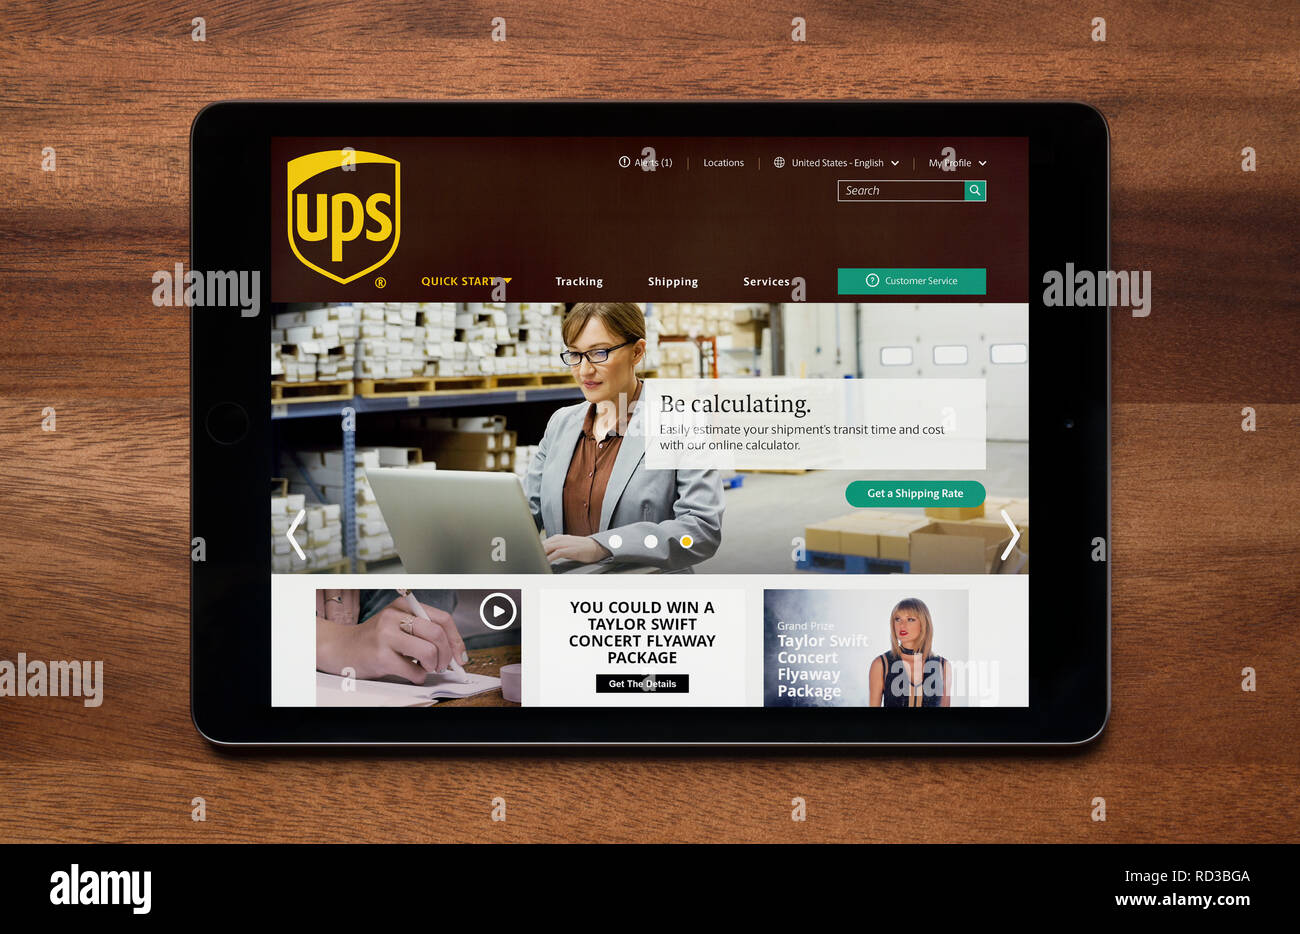 Le site web de l'UPS est vu sur une tablette iPad, qui repose sur une table en bois (usage éditorial uniquement). Banque D'Images